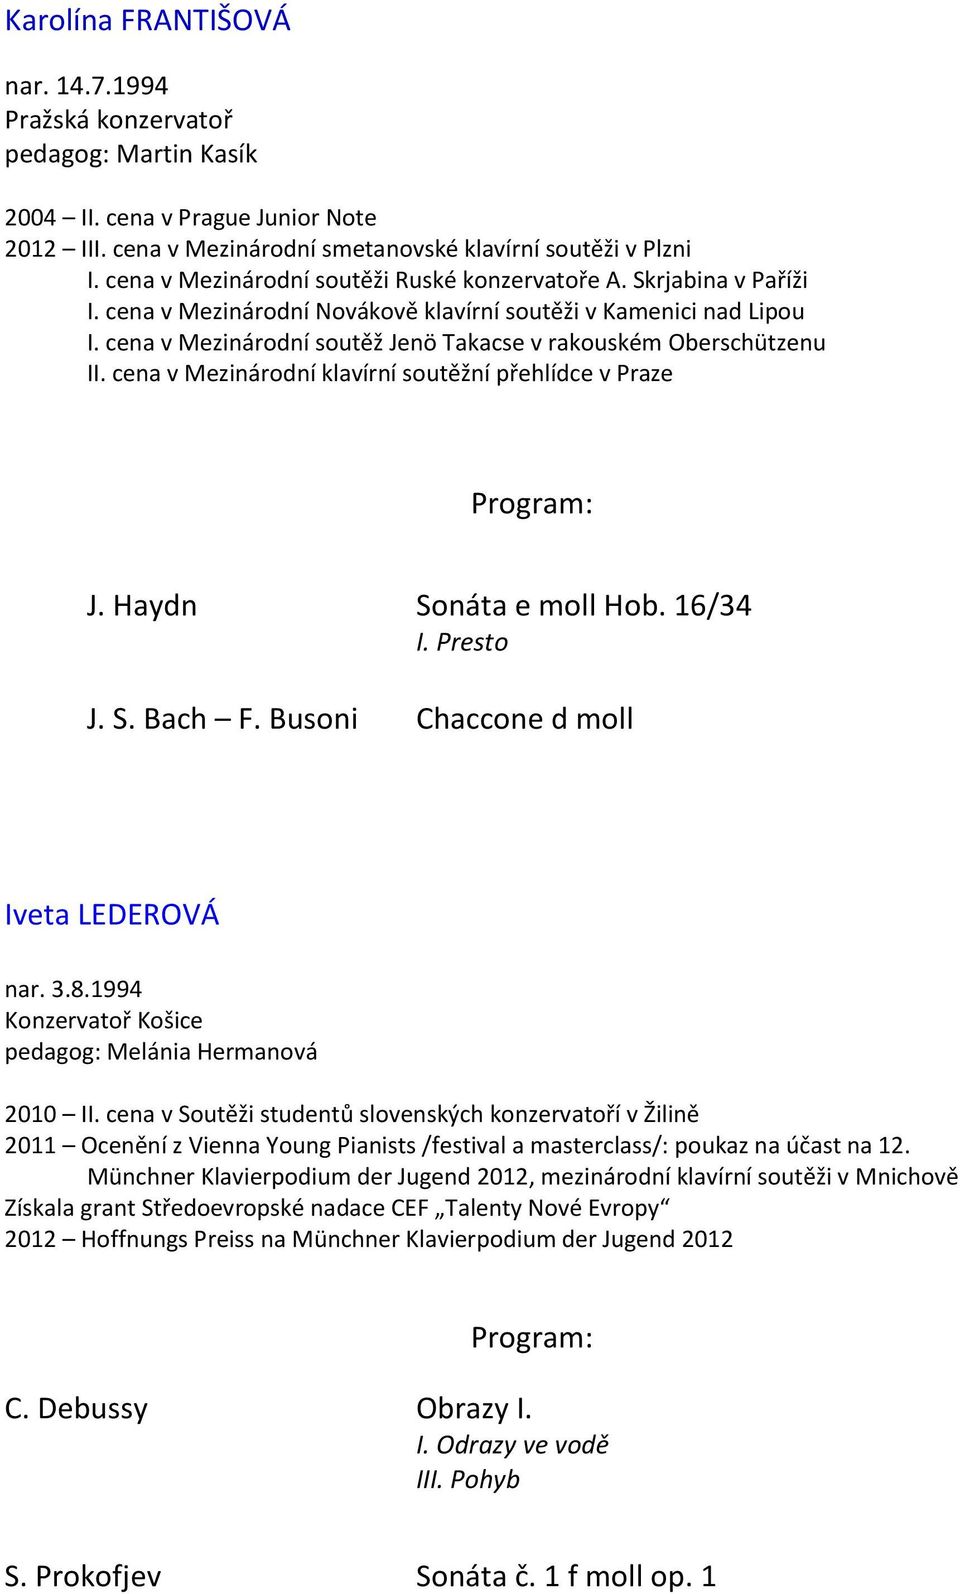 cena v Mezinárodní soutěž Jenö Takacse v rakouském Oberschützenu II. cena v Mezinárodní klavírní soutěžní přehlídce v Praze J. Haydn Sonáta e moll Hob. 16/34 I. Presto J. S. Bach F.